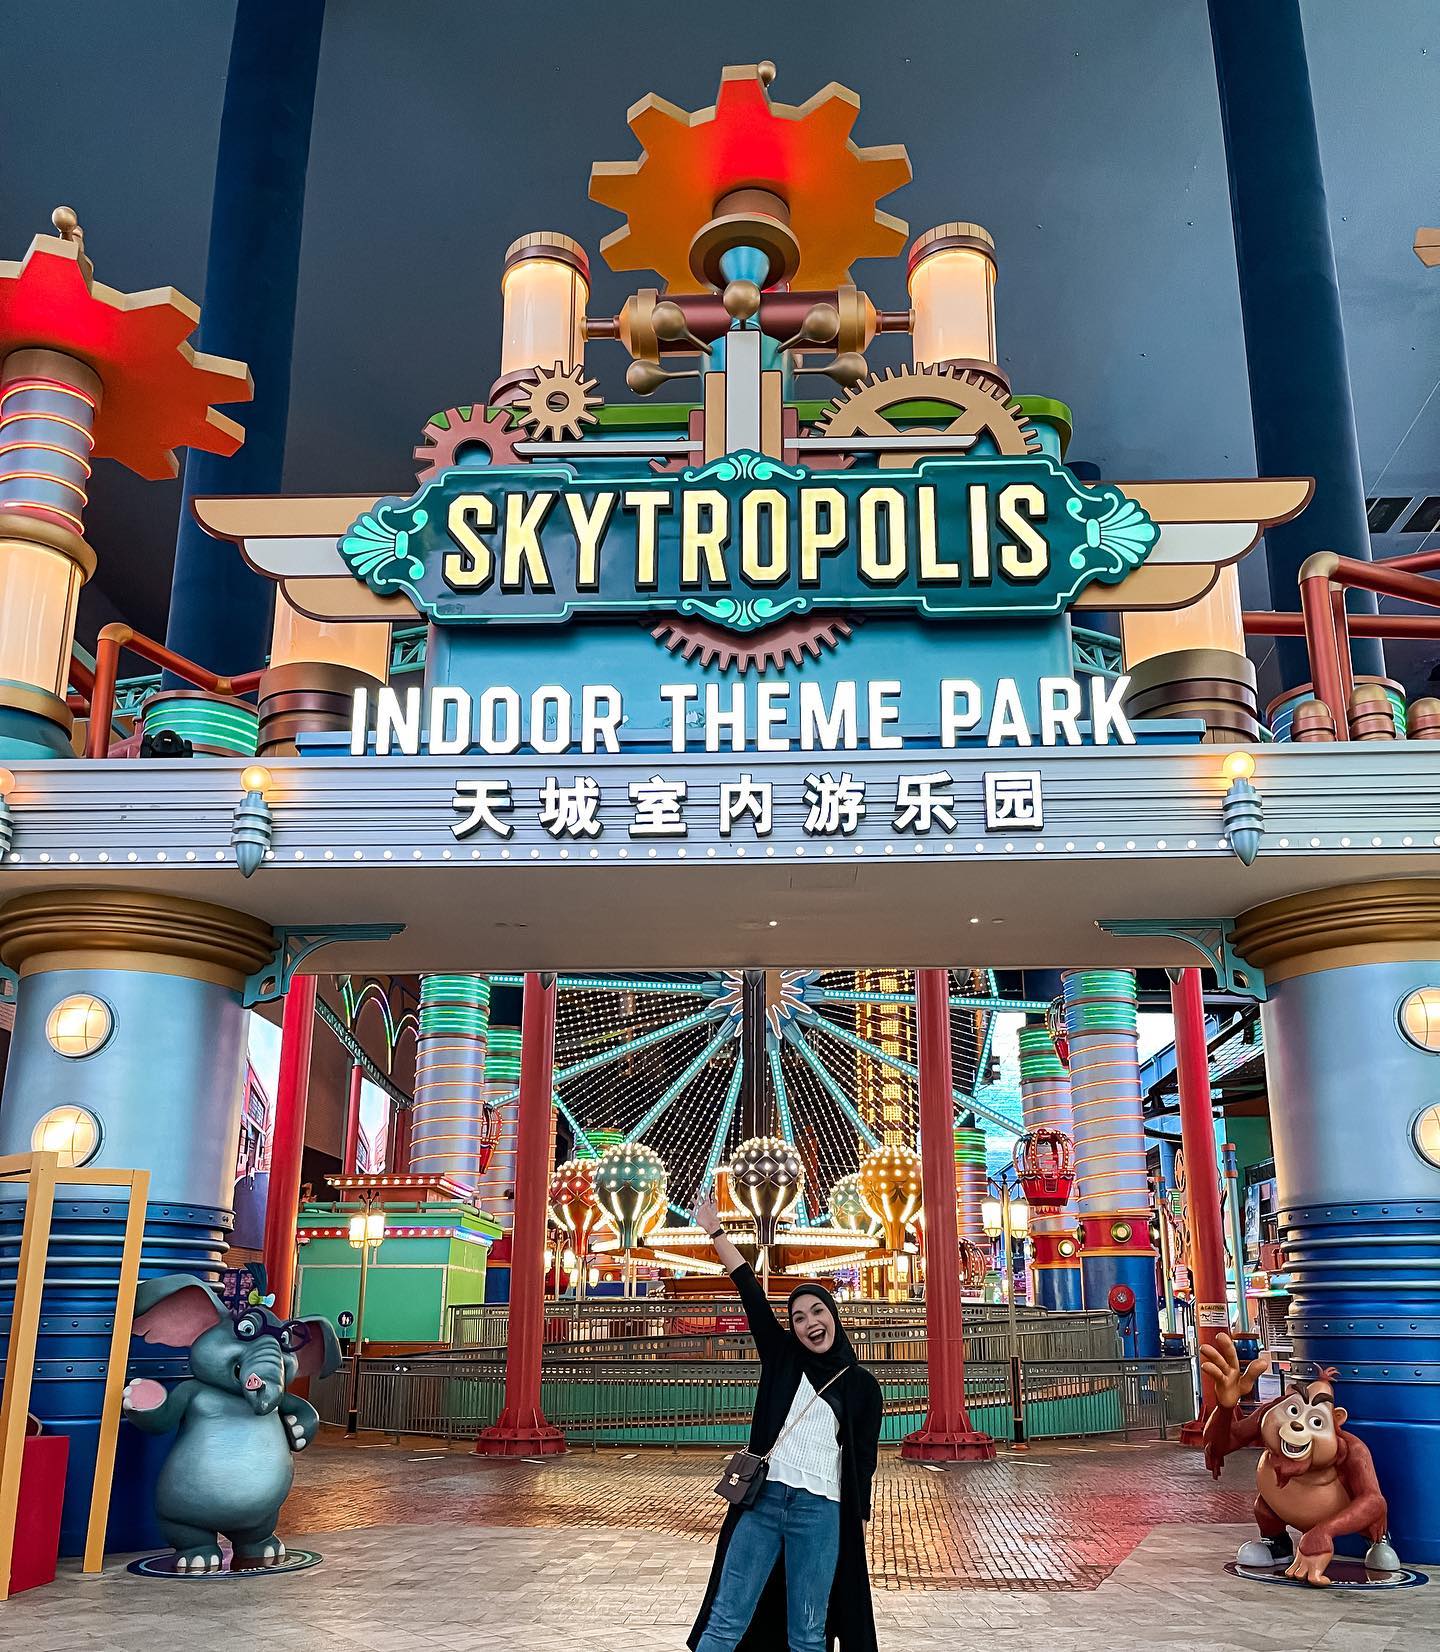 Skytropolis Entrance